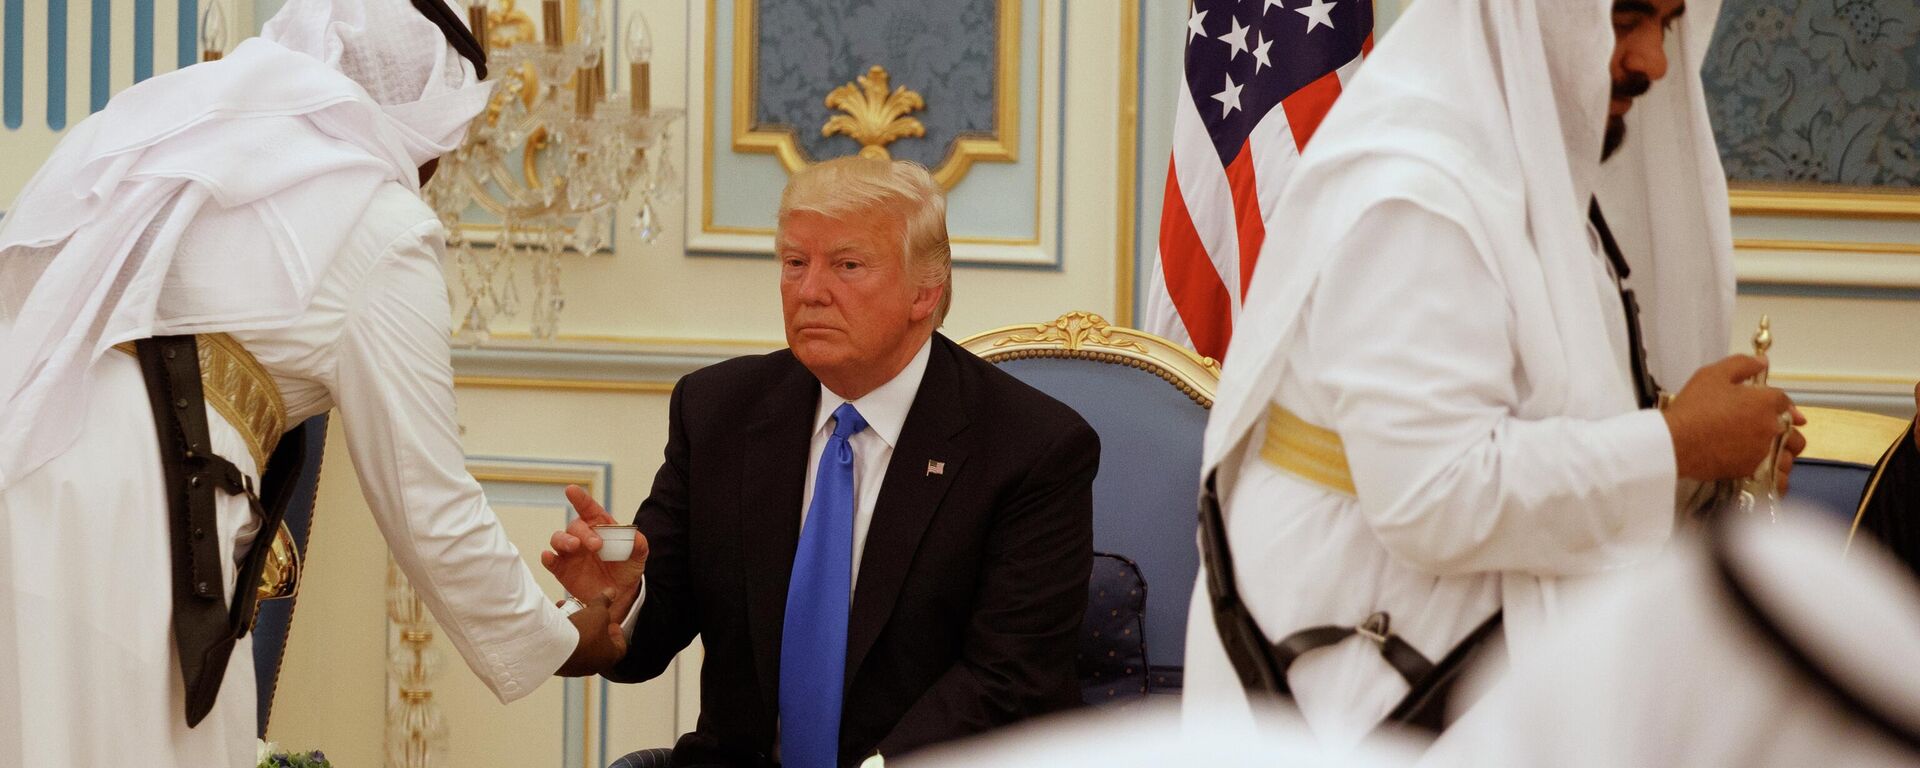 Президент США Дональд Трамп пьет кофе в Королевском дворце в Эр-Рияде, 2017 год - Sputnik International, 1920, 05.10.2022